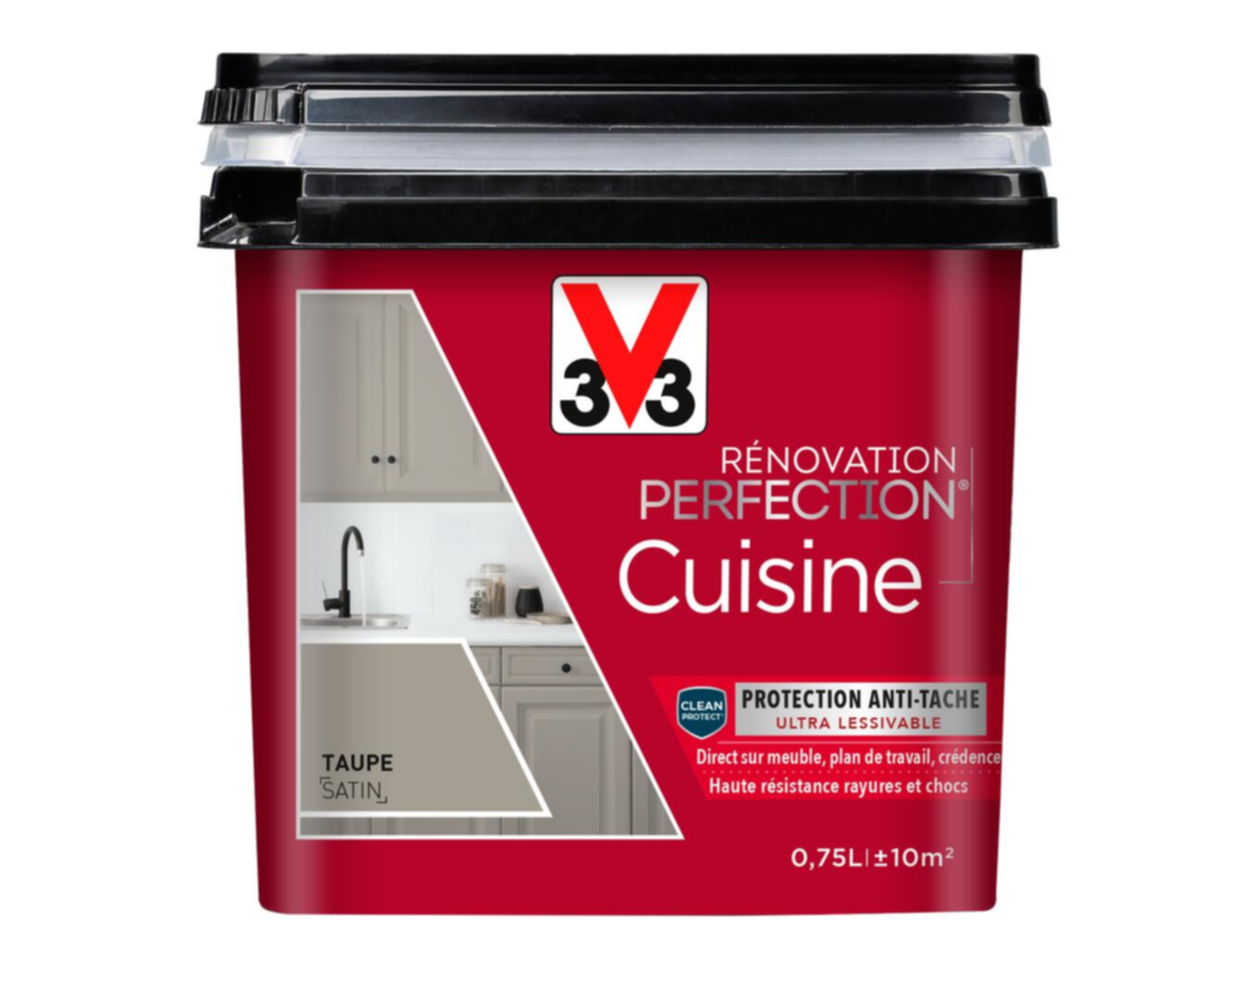 Peinture rénovation cuisine Perfection taupe satin 0,75l - V33